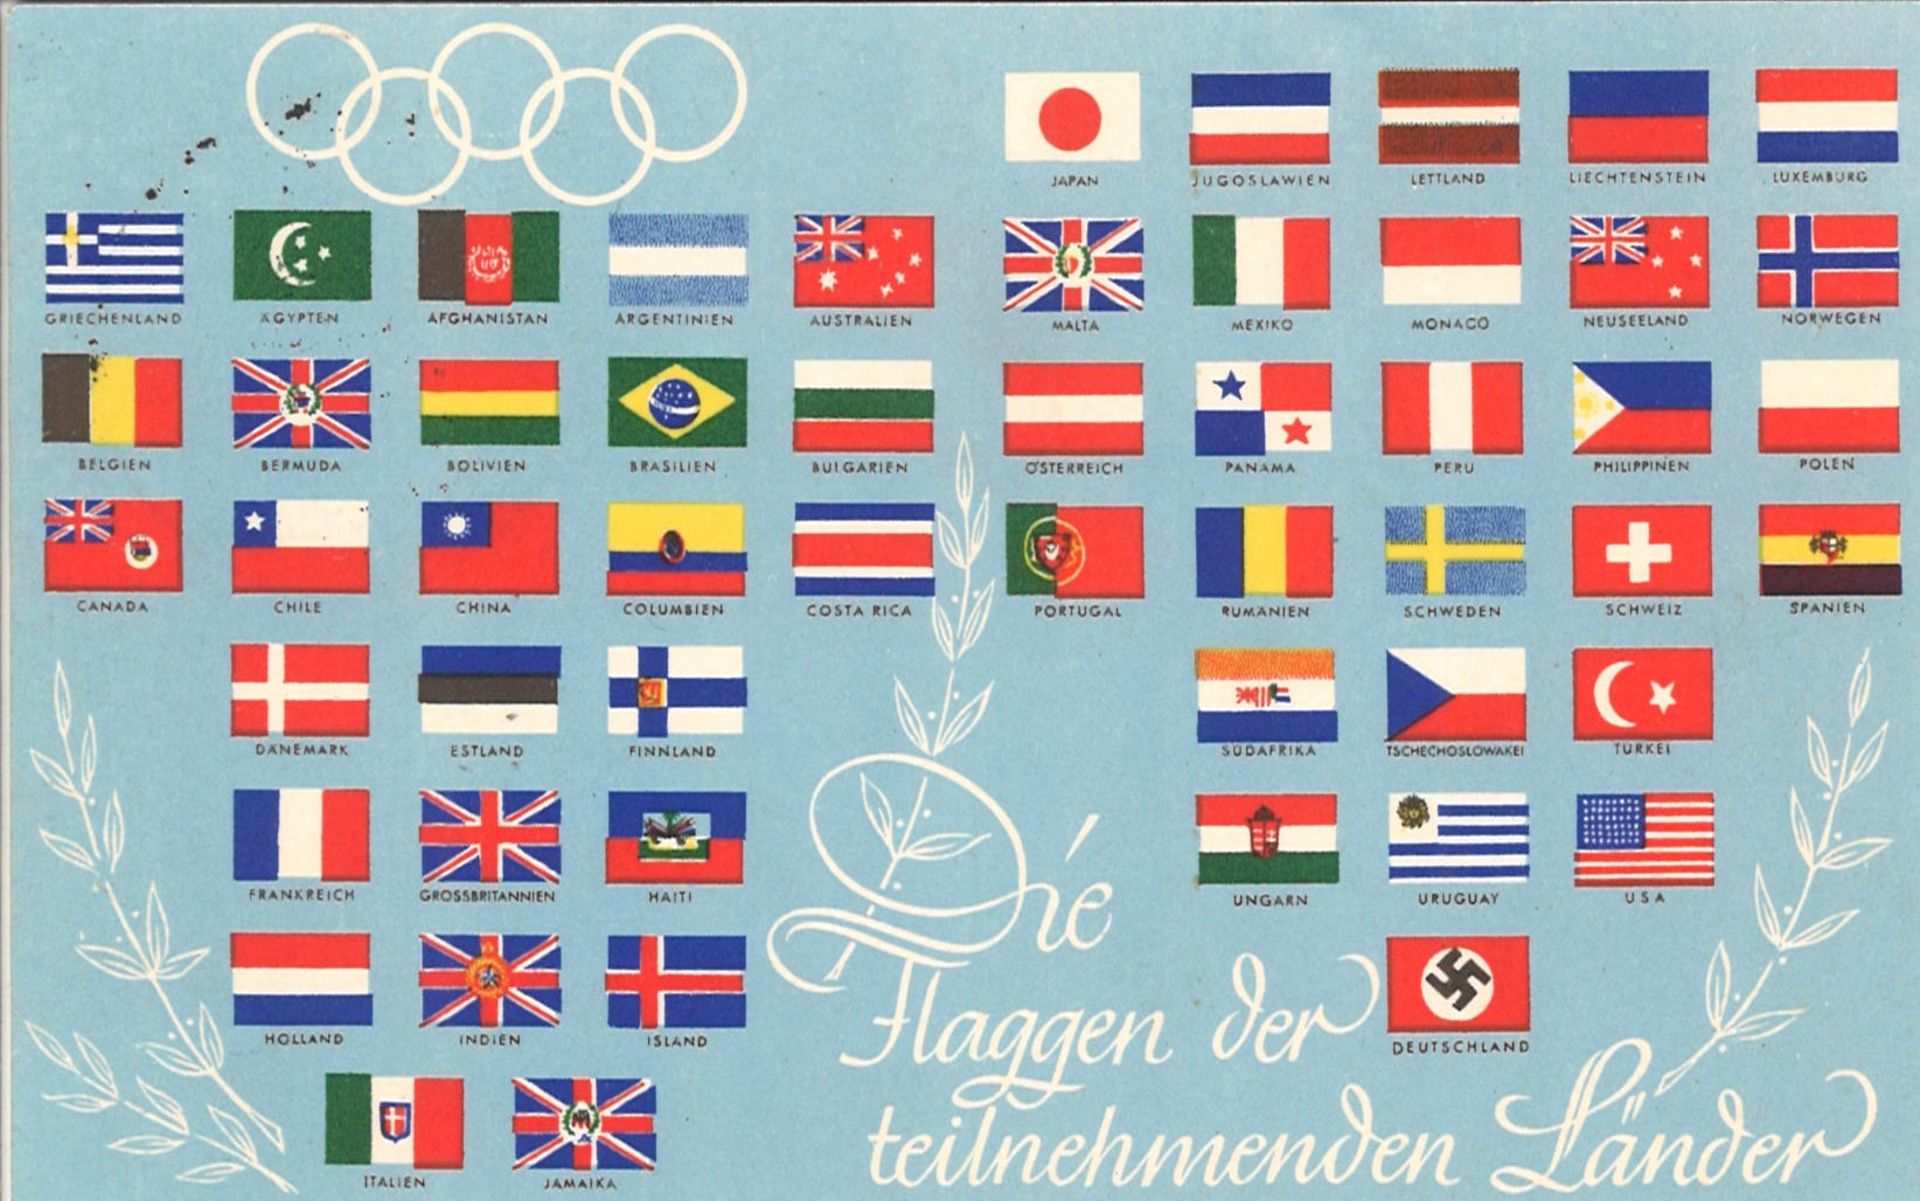 Postkarte mit Sonderstempel, Die Flaggen der teilnehmenden Länder, Schrift in weiß.